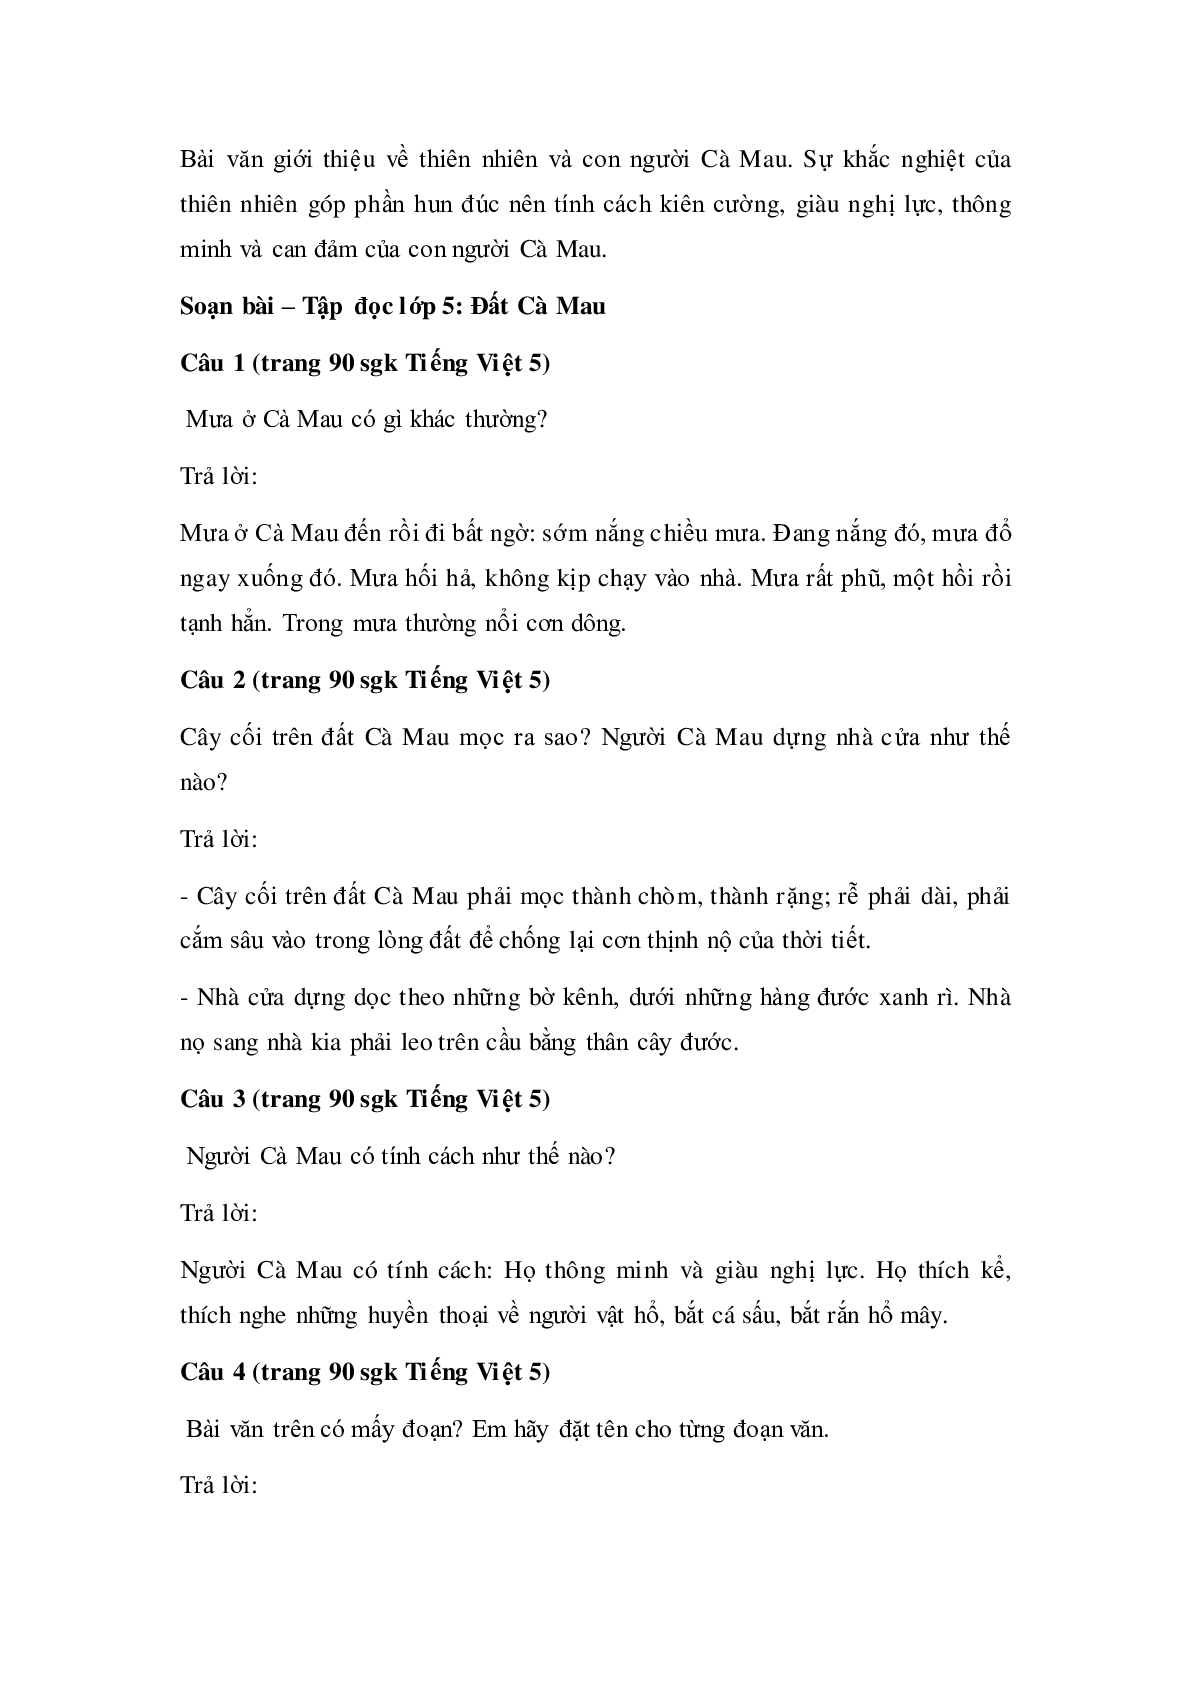 Soạn Tiếng Việt lớp 5: Tập đọc: Đất Cà Mau mới nhất (trang 2)